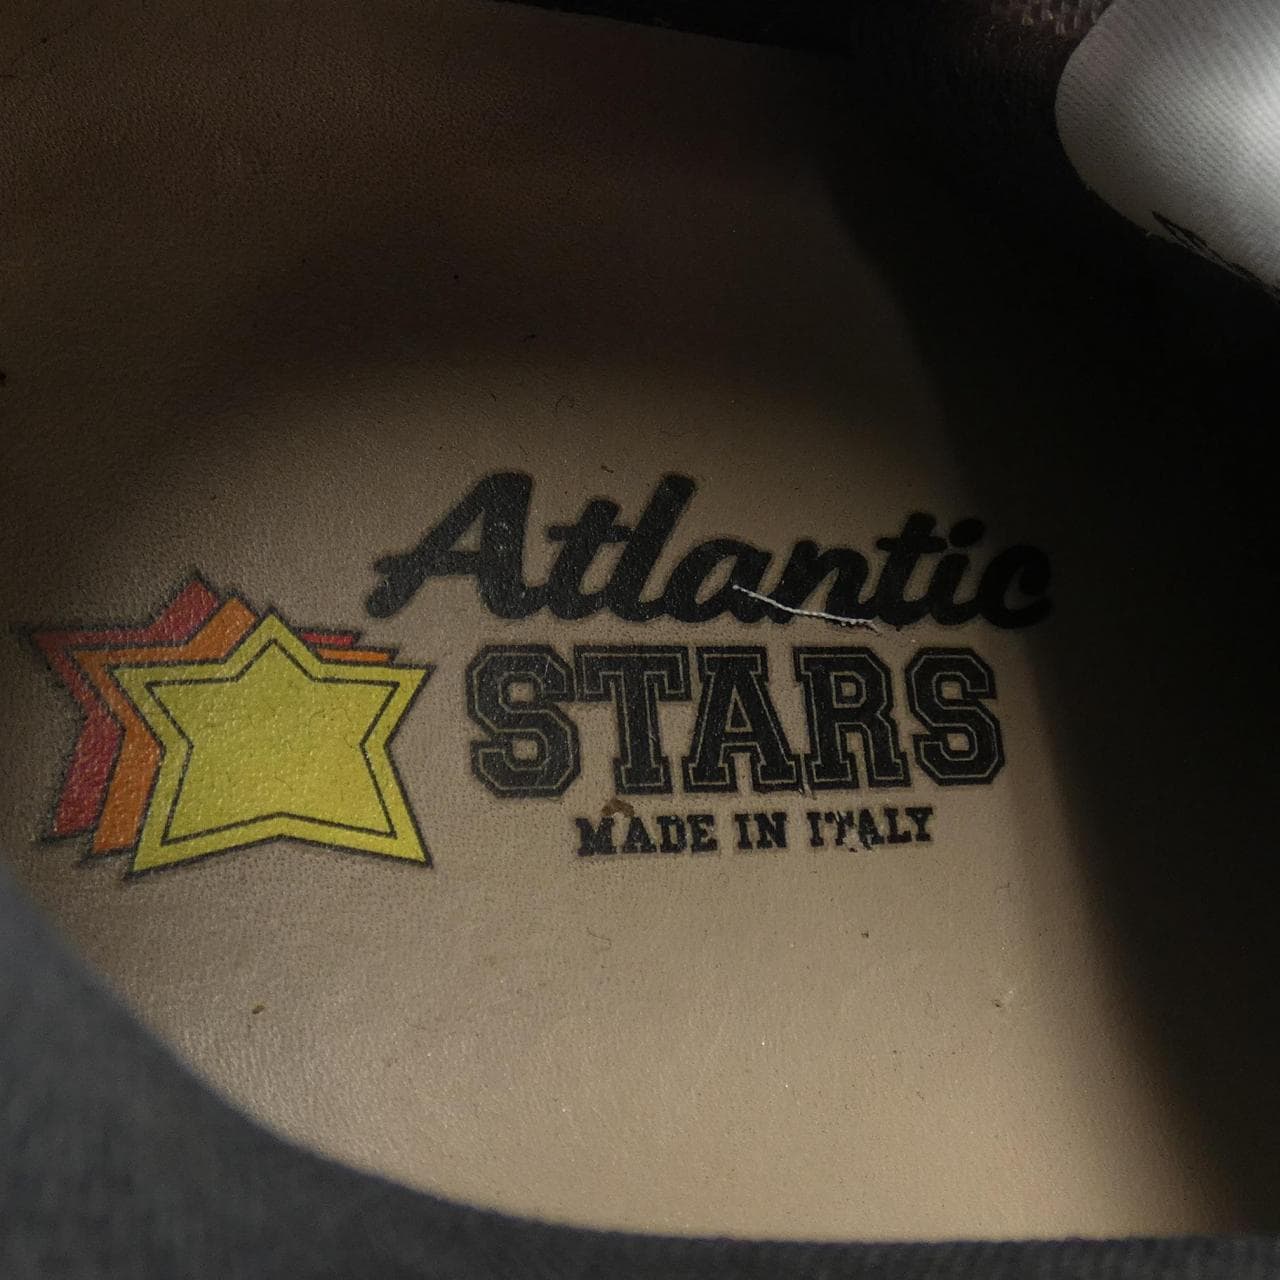 Atlantic Stars ATLANTIC STARS sneakers